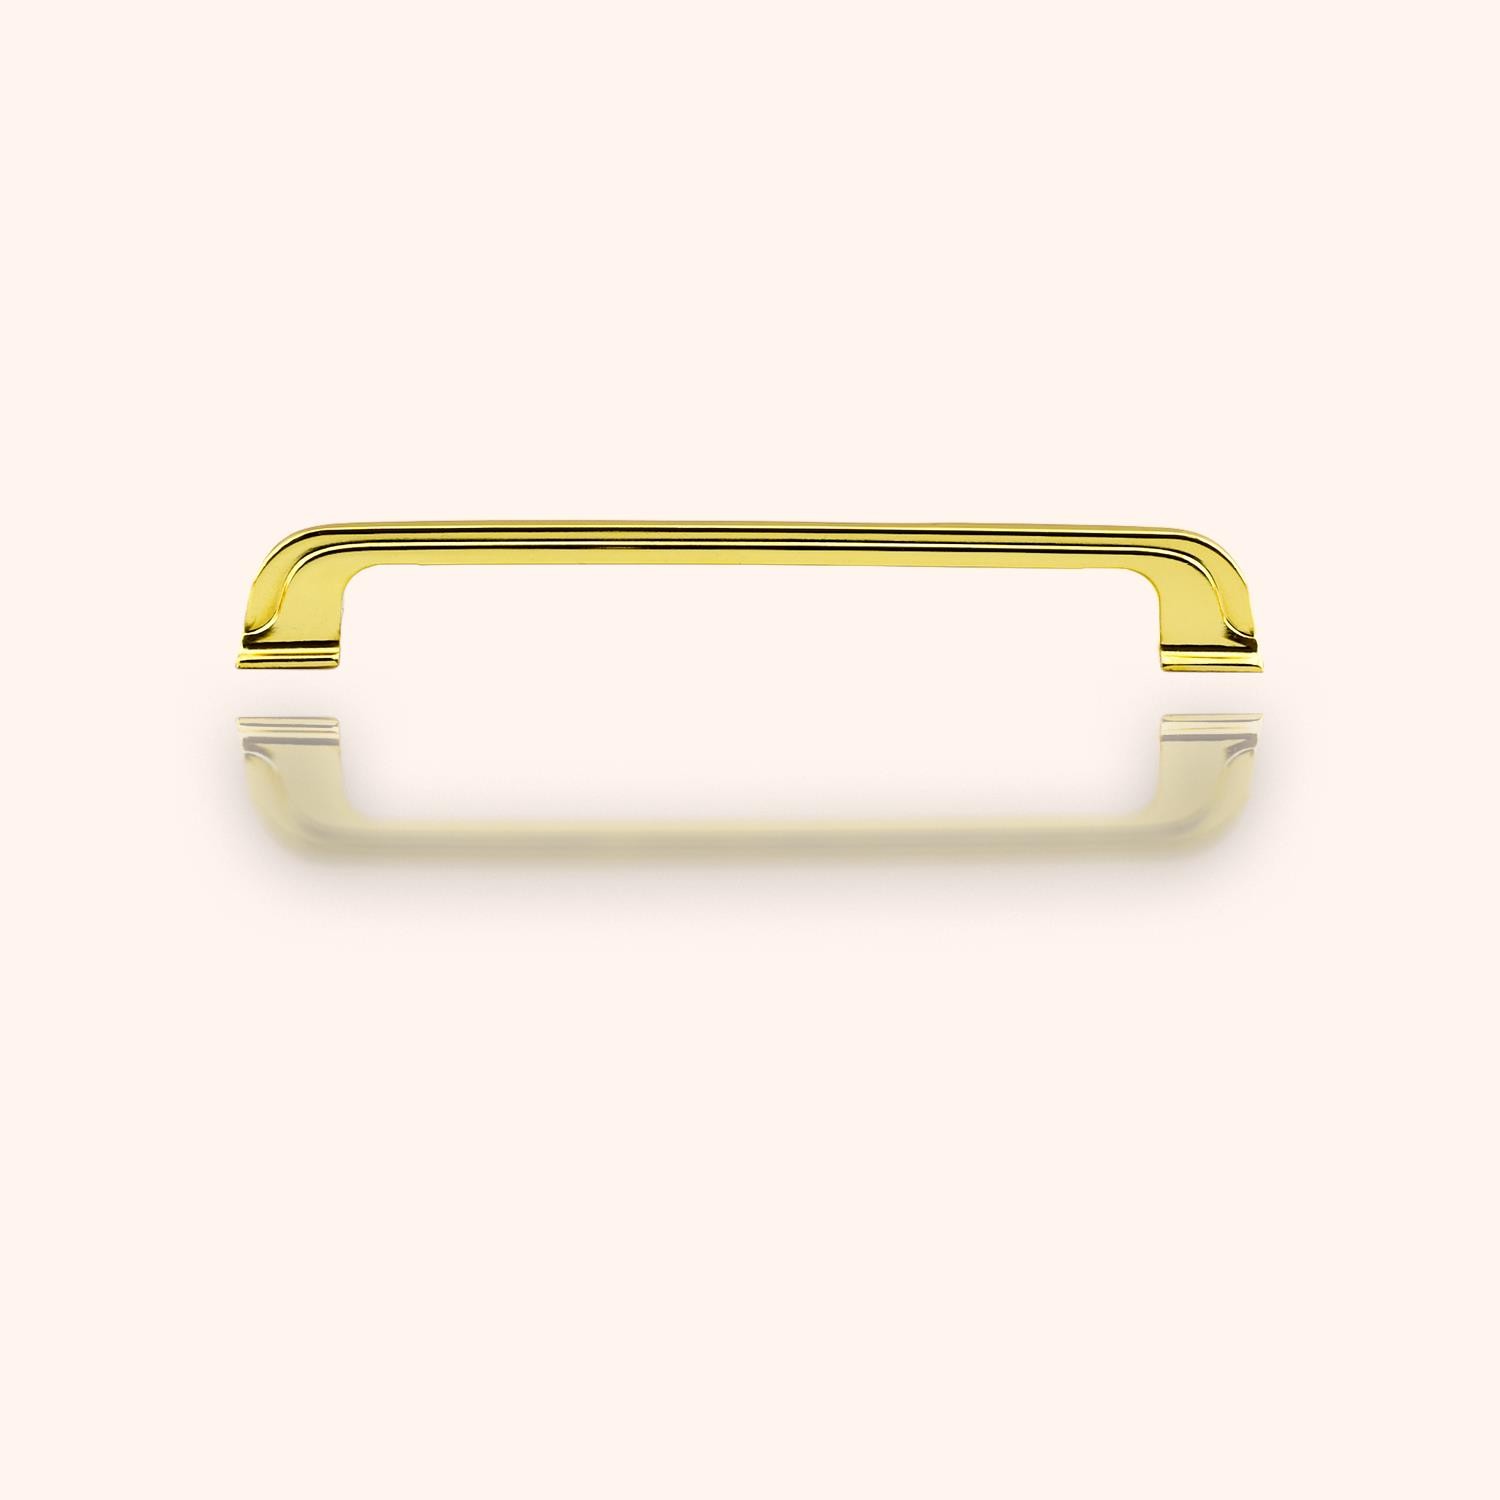 Alperen Mobilya Mutfak Dolabı Çekmece Dolap Kapak Kulpu Düz 160 mm Kulbu Gold Altın Metal Kulp